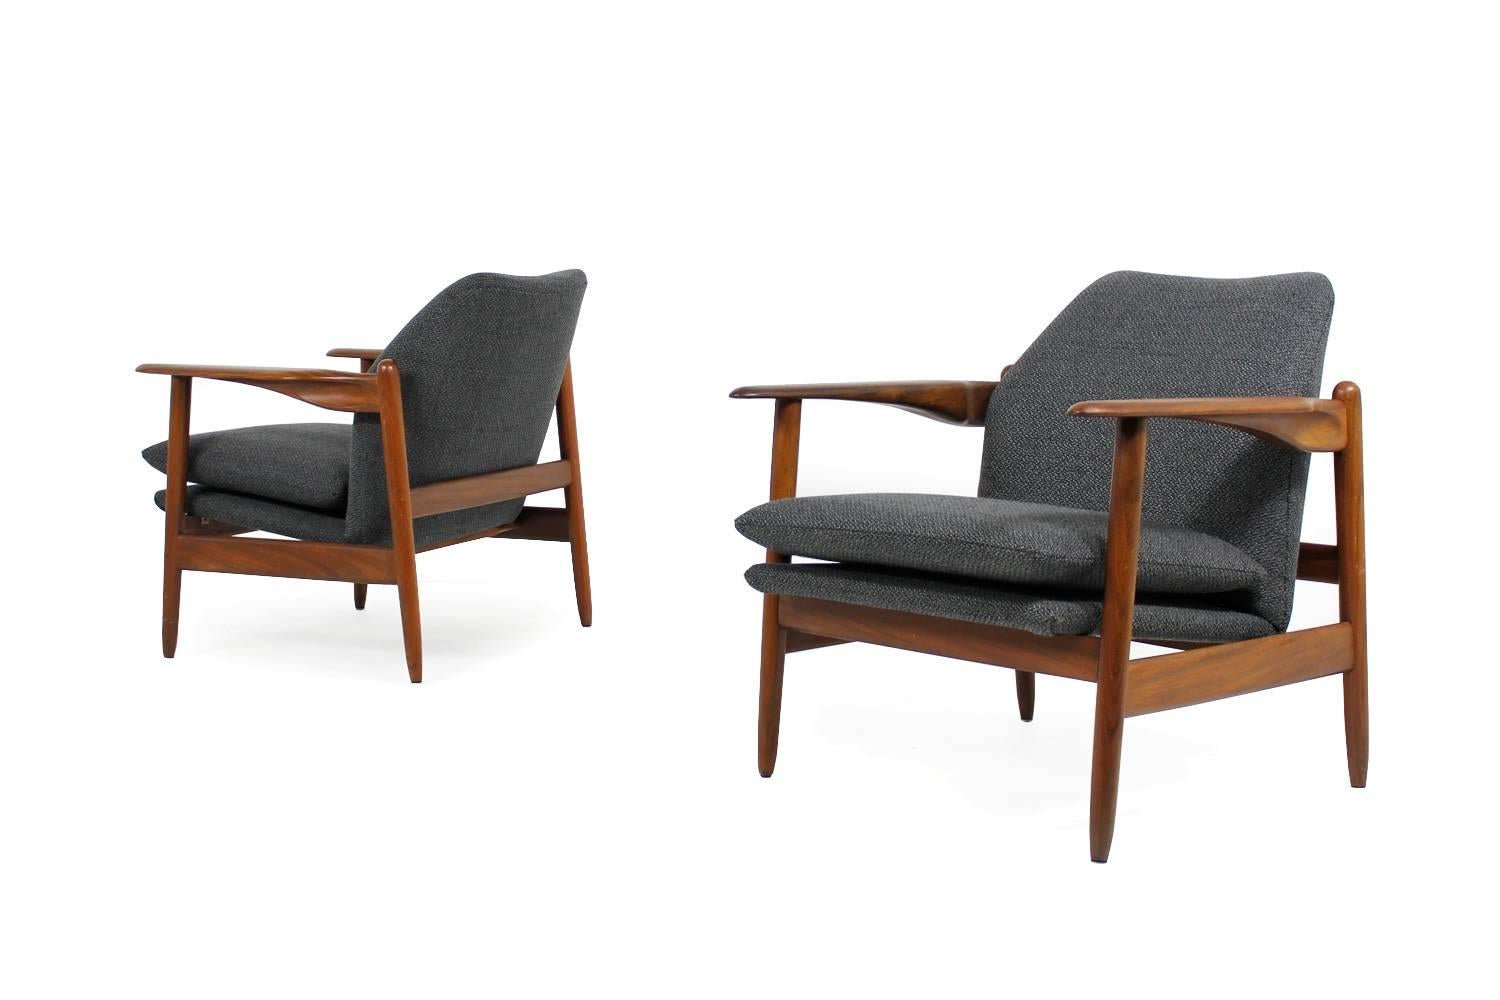 Amazing & Rare Pair of 1960s Organic Danish Teak Easy Chairs, Mid-Century Modern 1